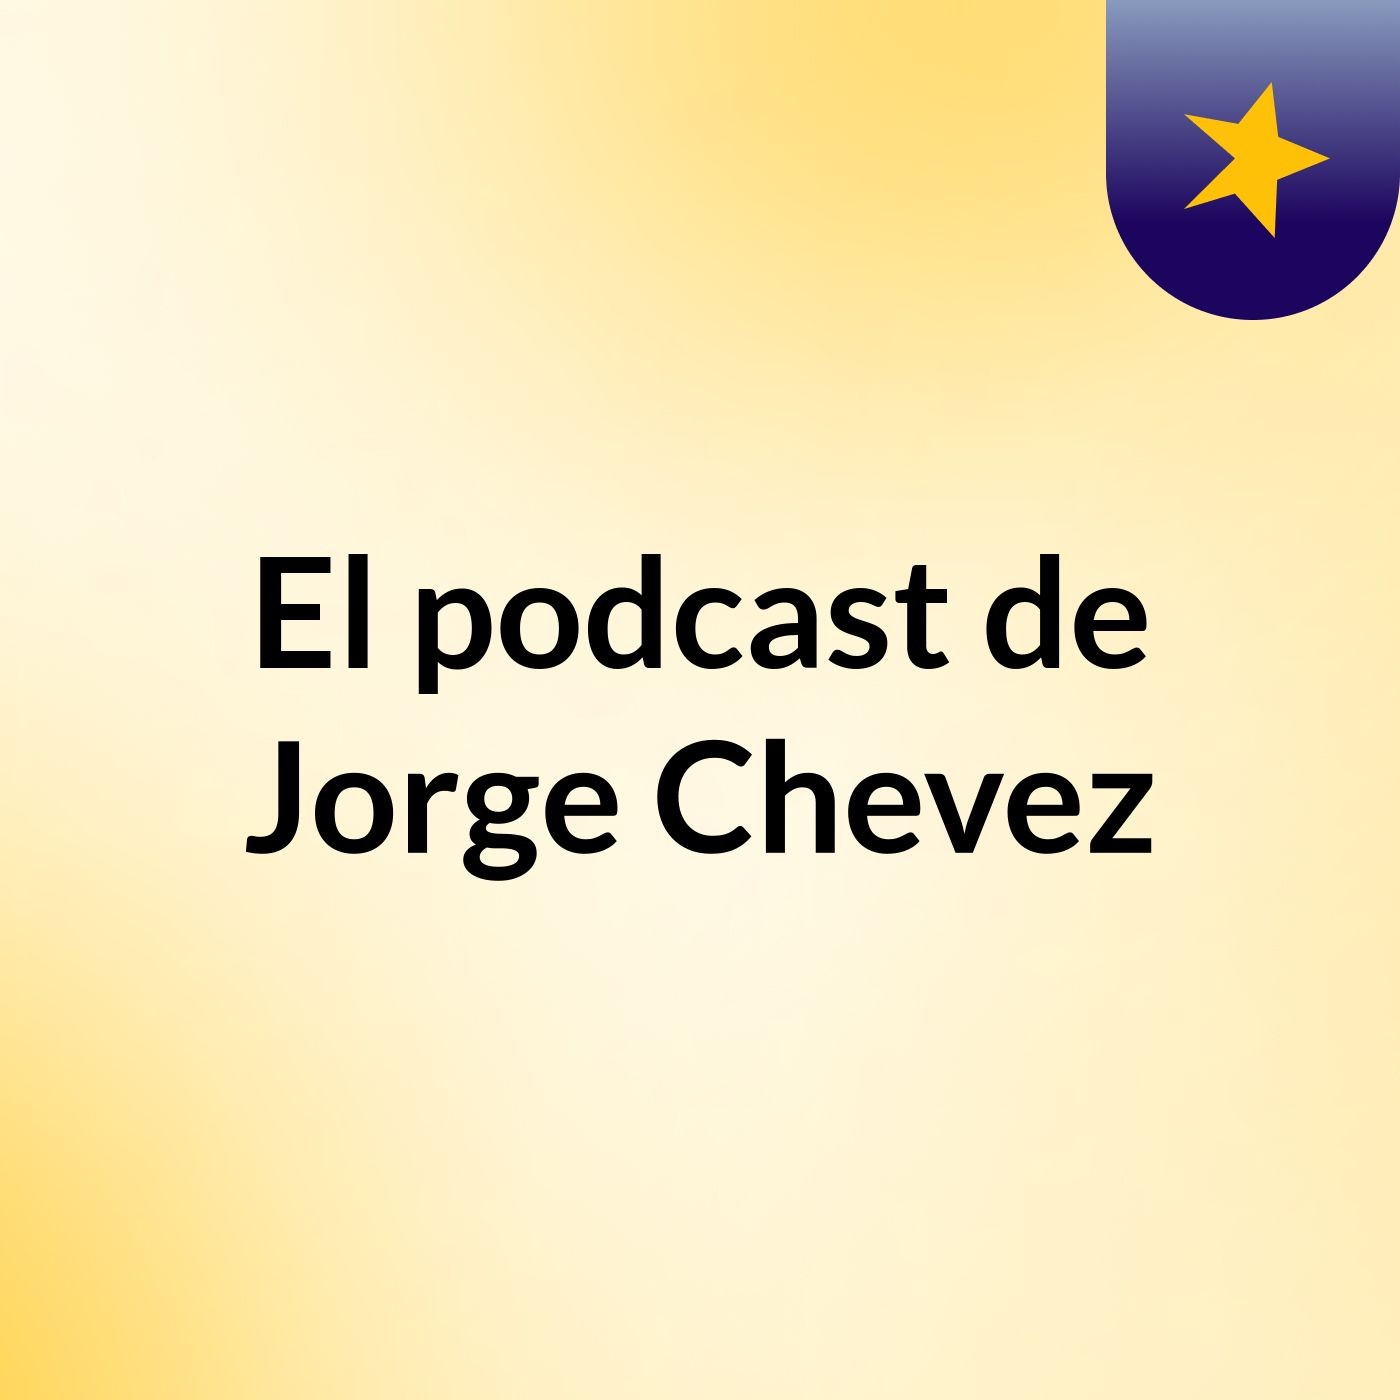 El podcast de Jorge Chevez